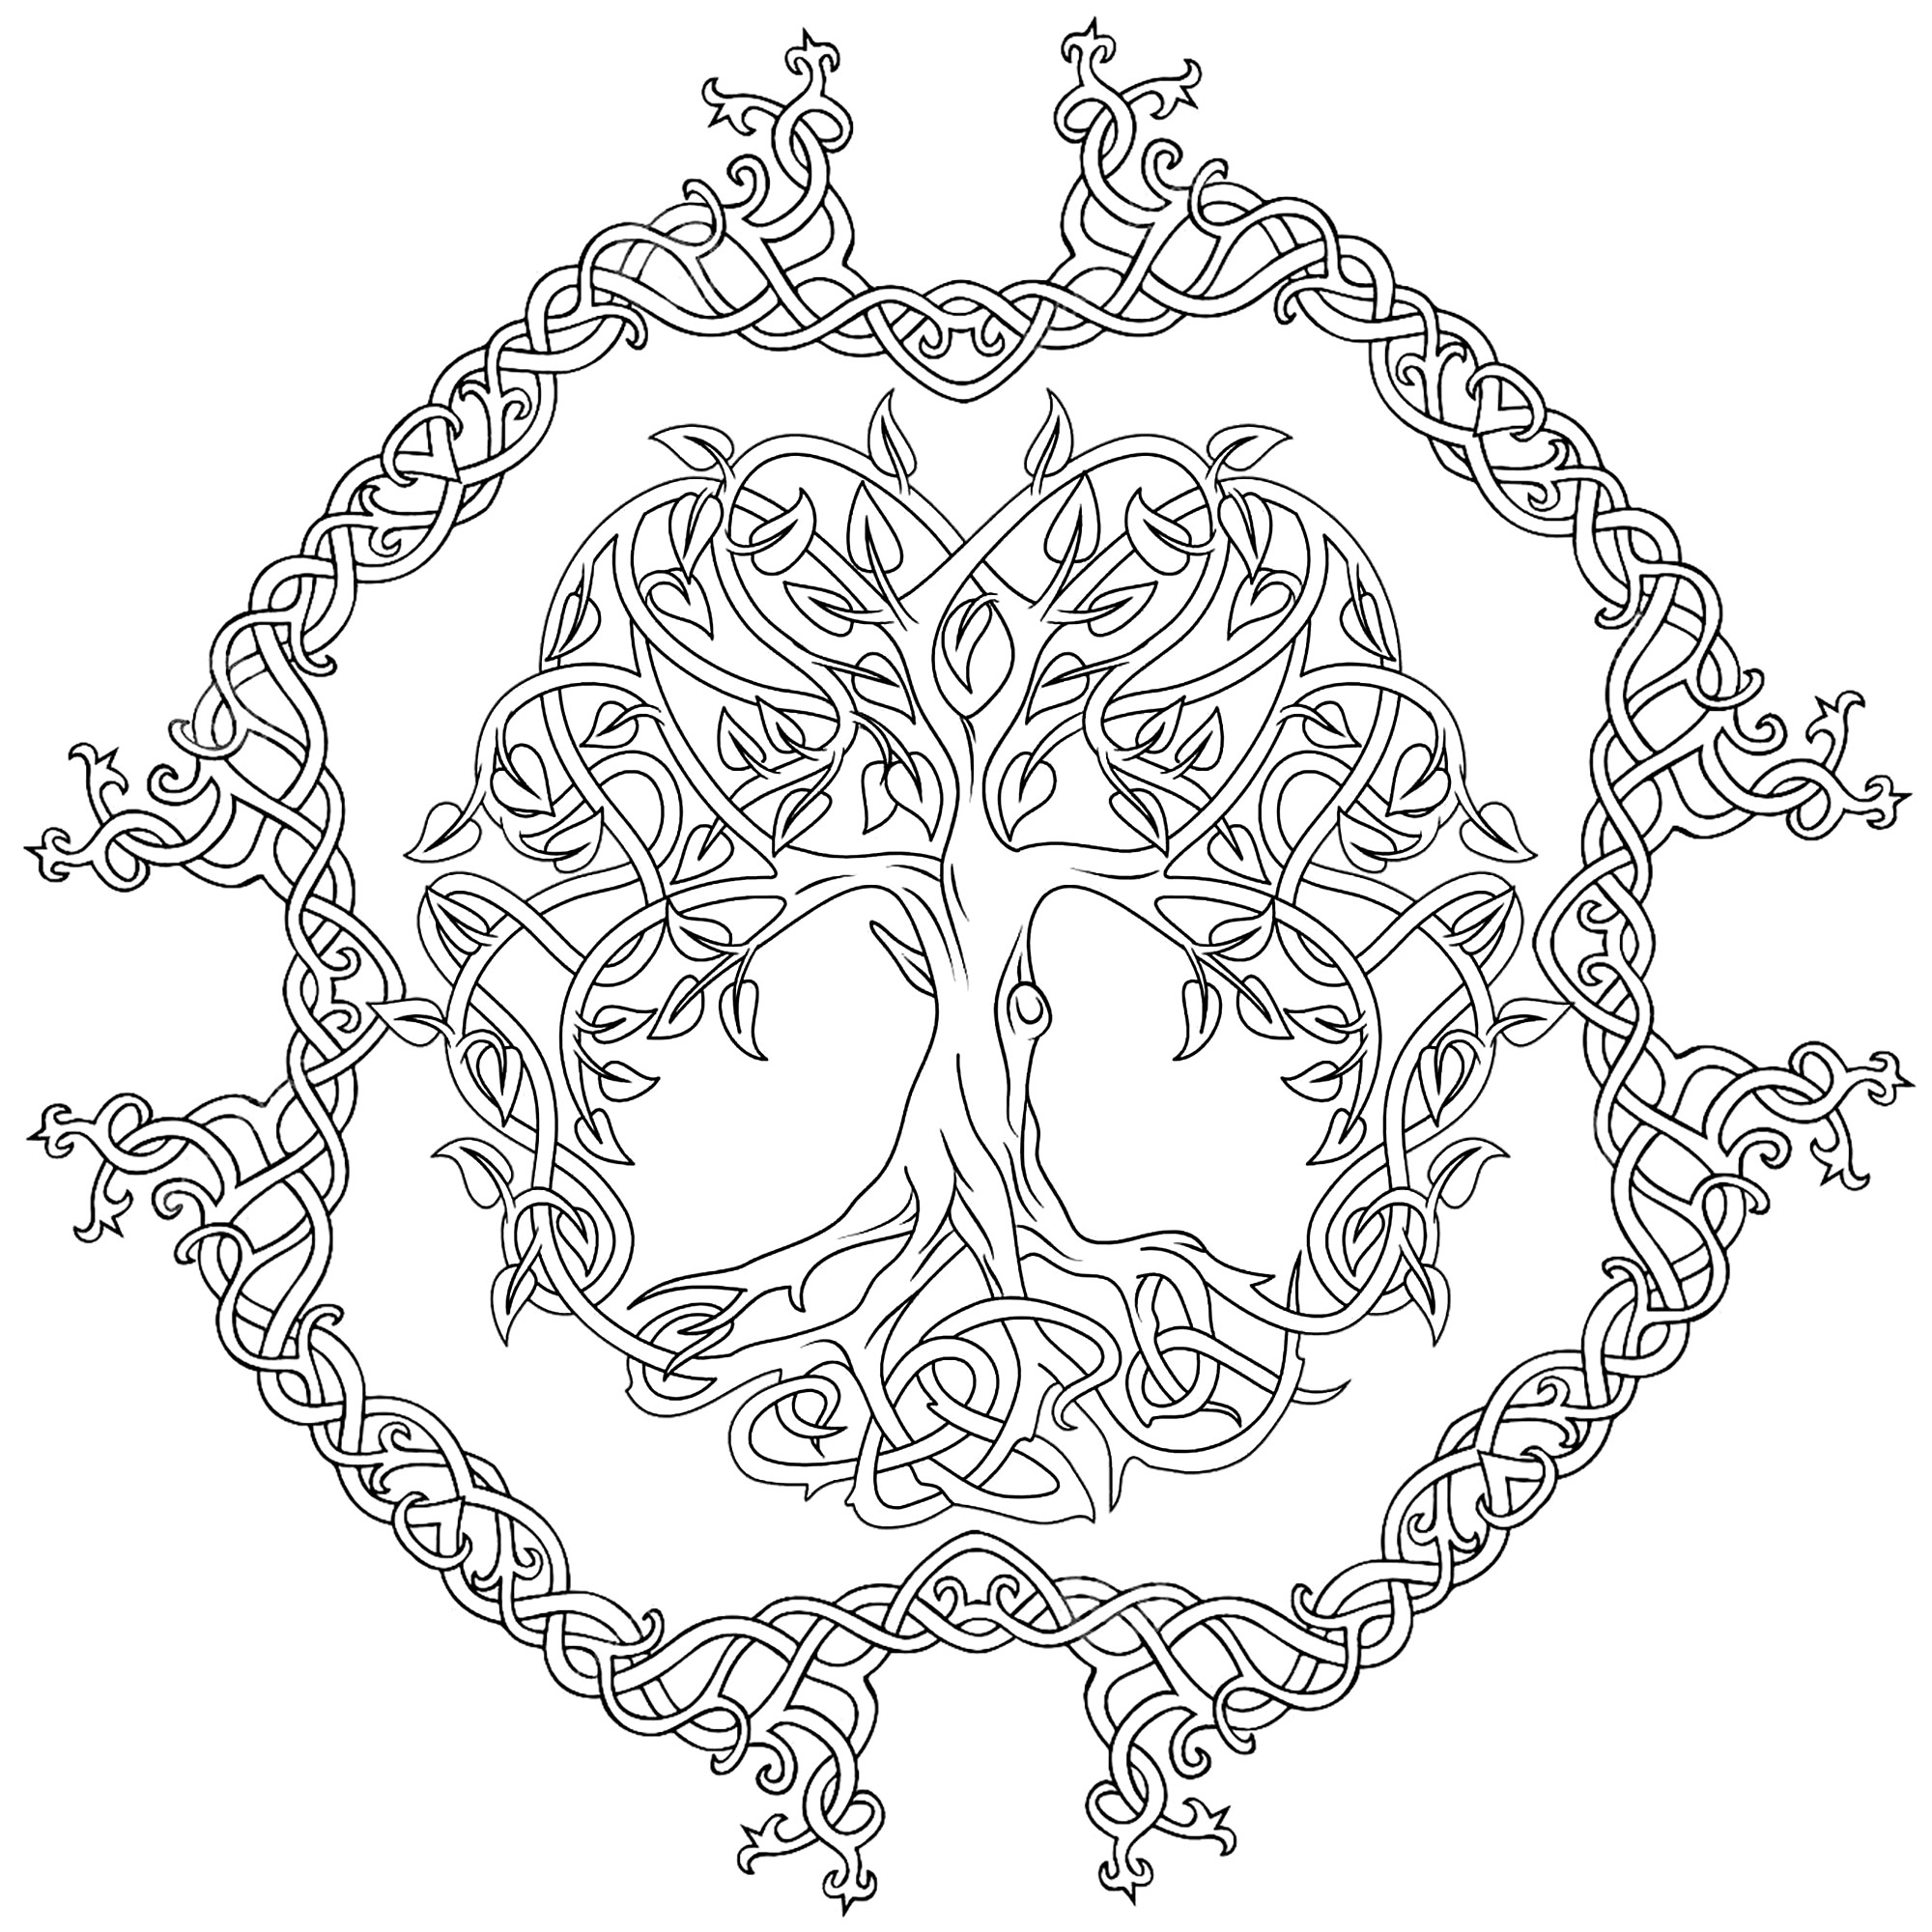 Albero della vita celtico, con cerchio intorno composto da forme curve. L'albero della vita celtico rappresenta il concetto di forze della natura che convergono per creare armonia.